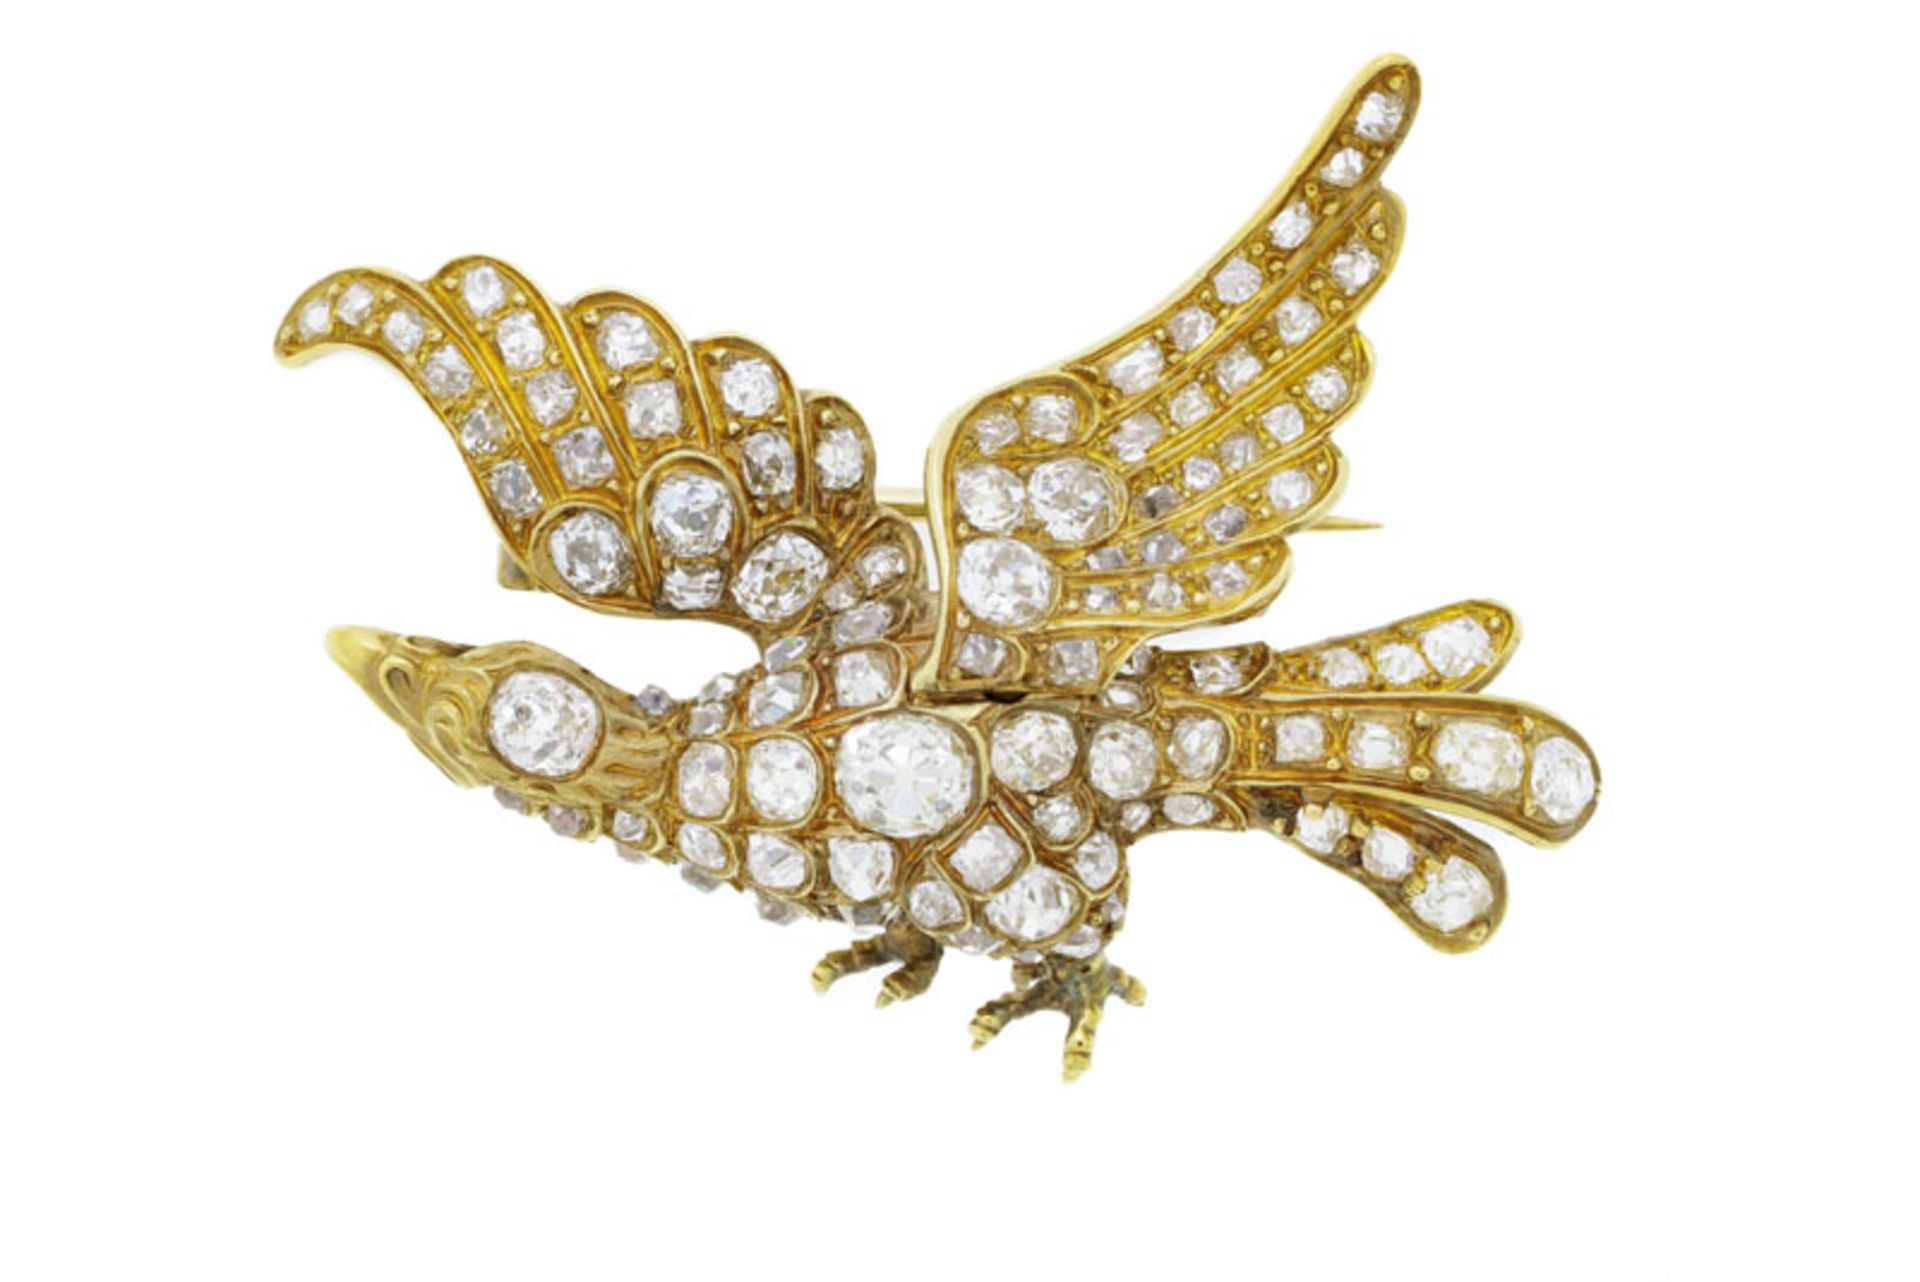 Broche fin XIXe s., or figurant un aigle les ailes déployées entièrement pavée de diamants taille an